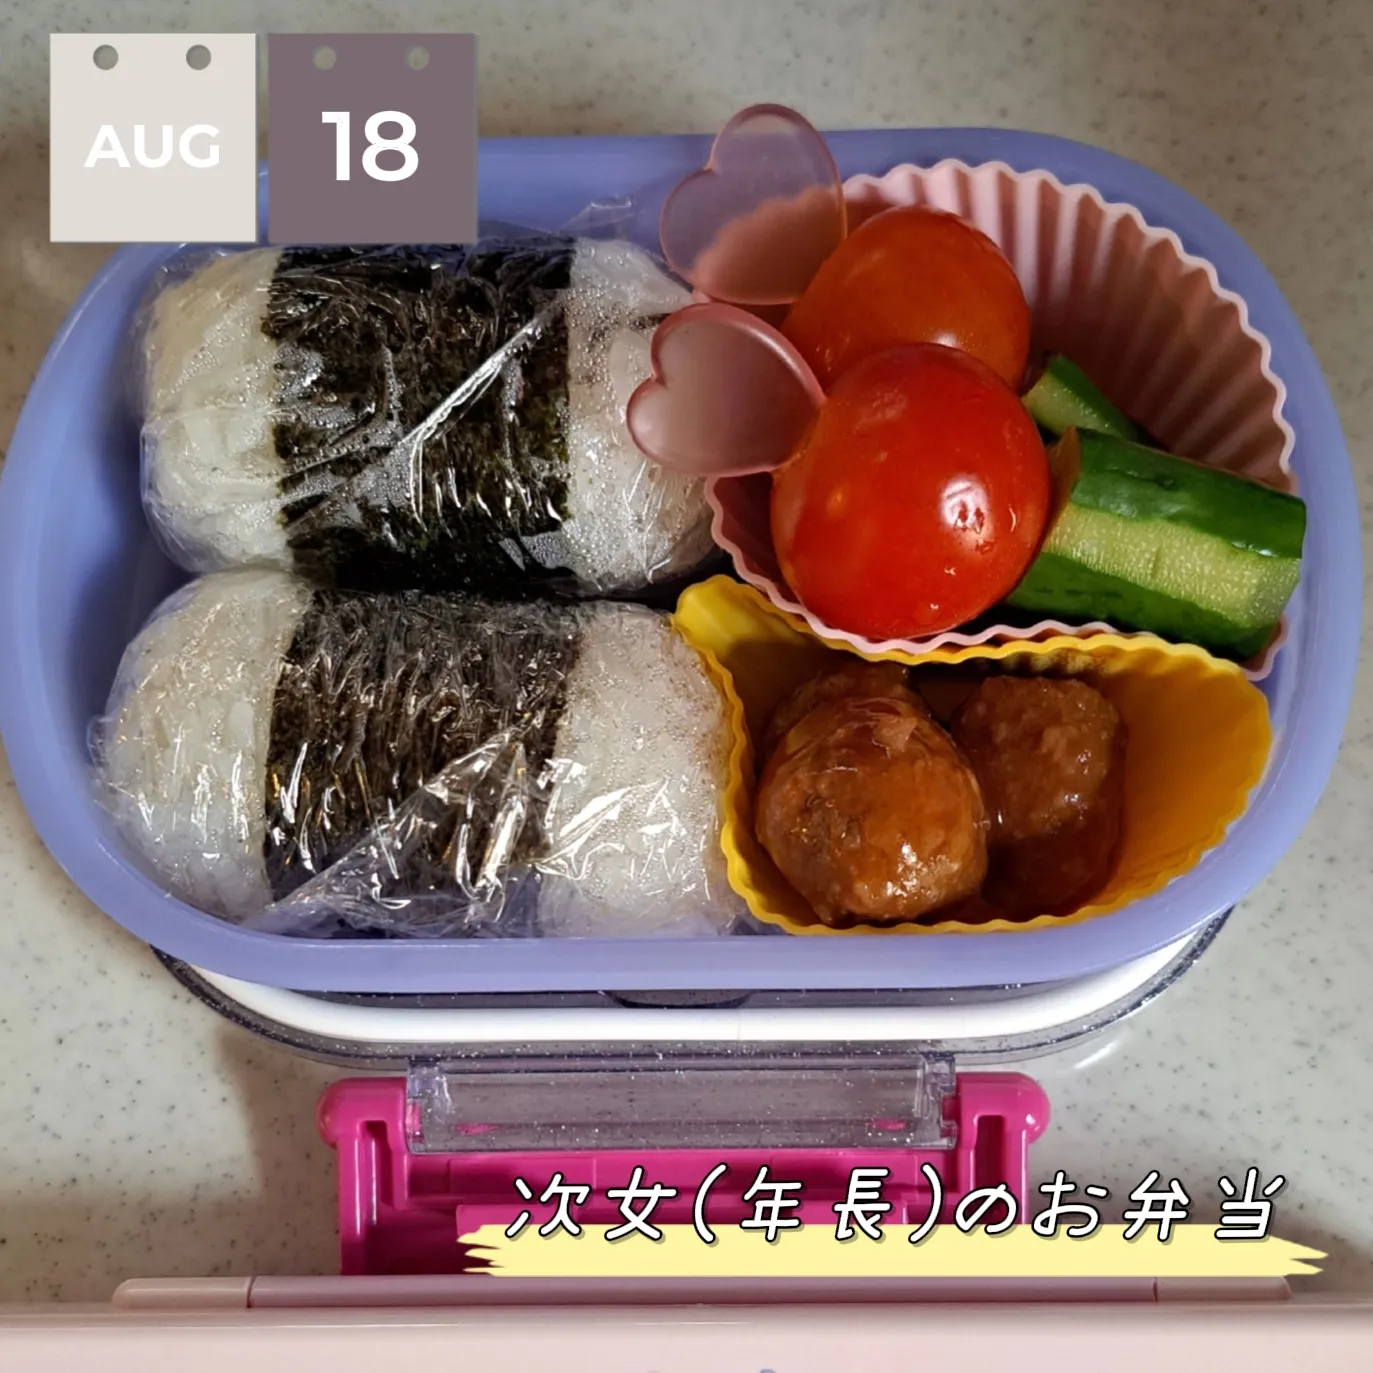 My Neighbor Totoro Bento Lunch Box, Daisies